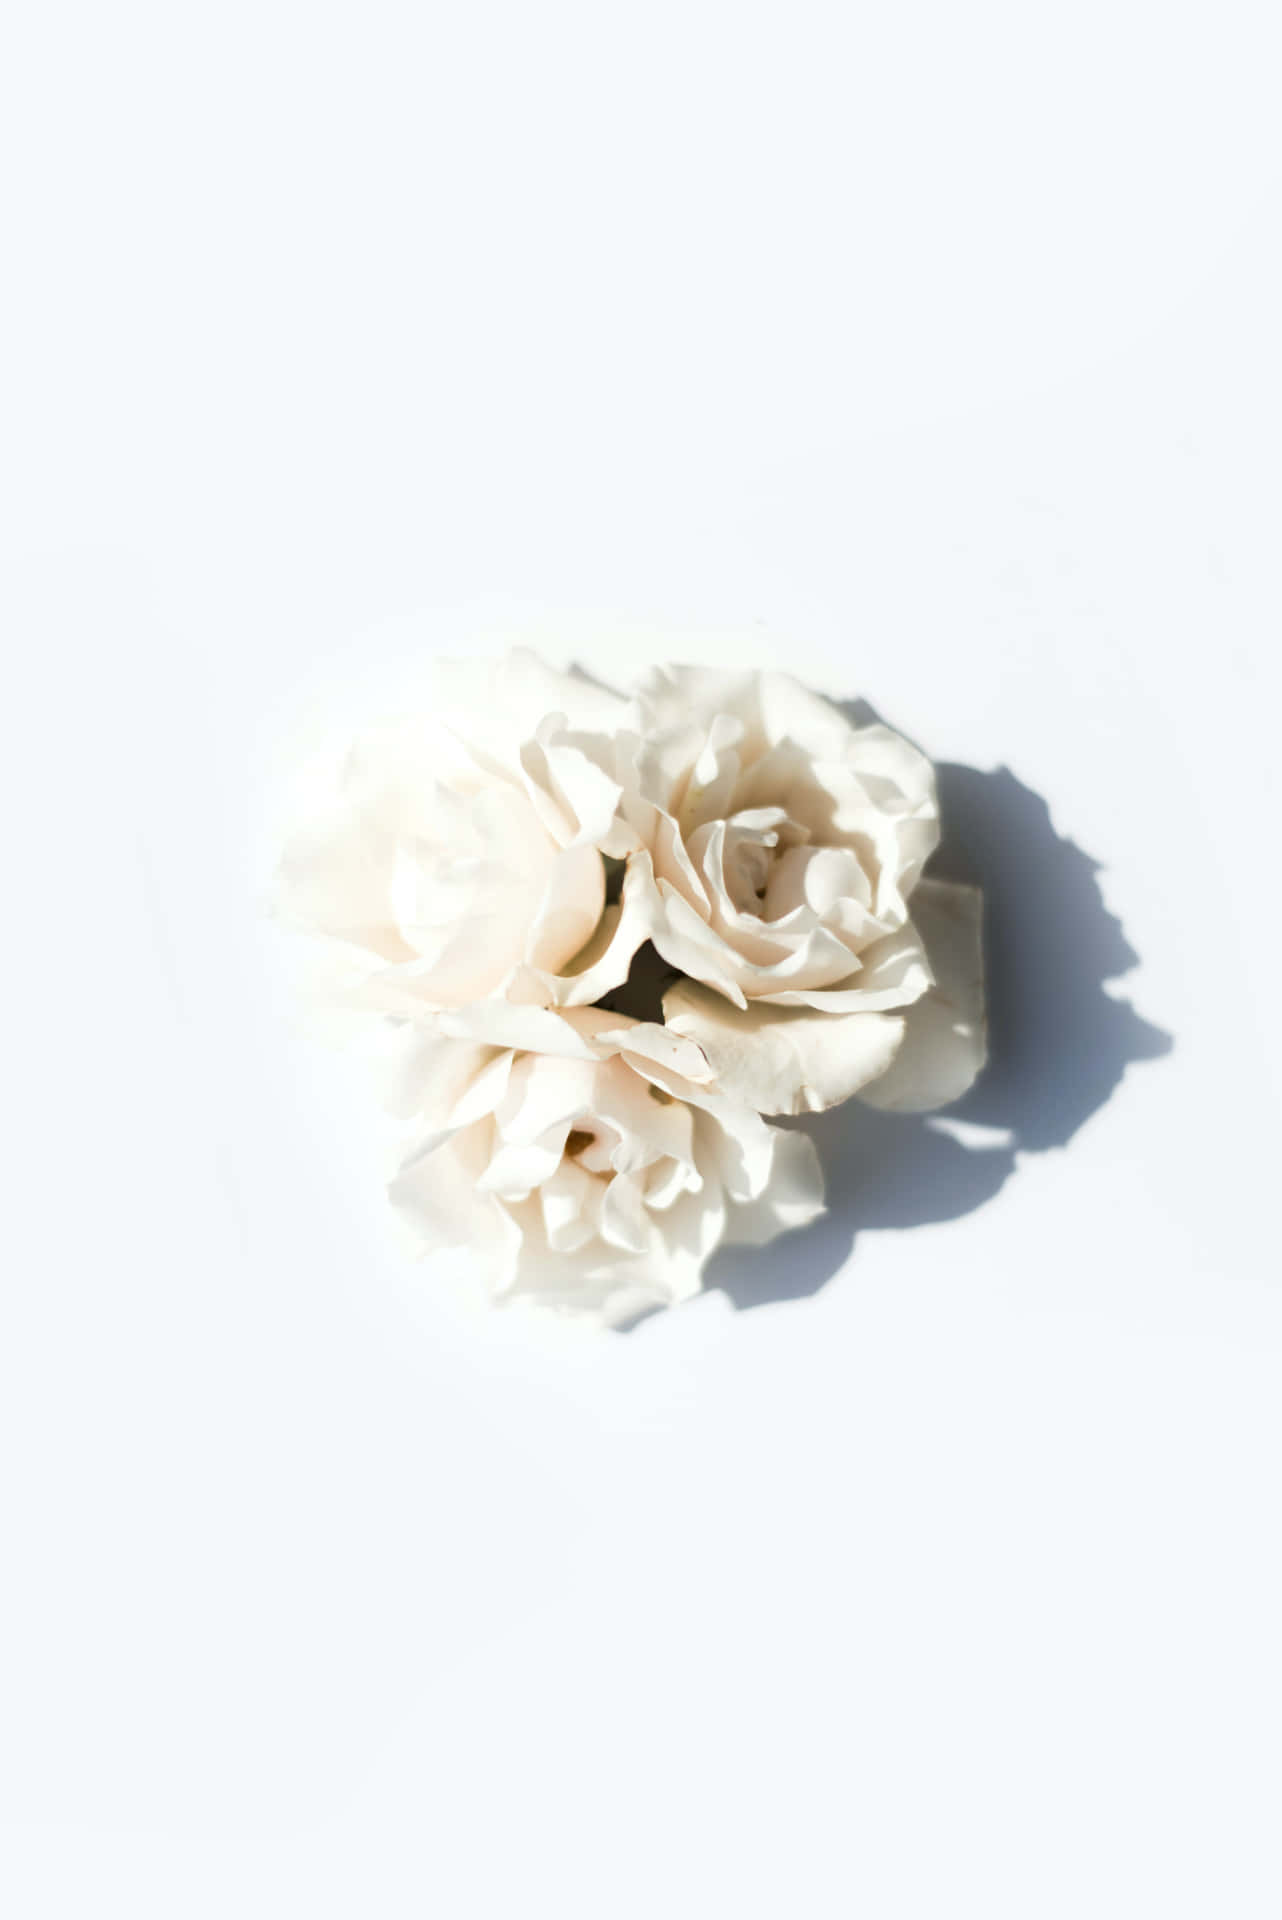 Ritrattodi Rose Bianche Su Sfondo Bianco